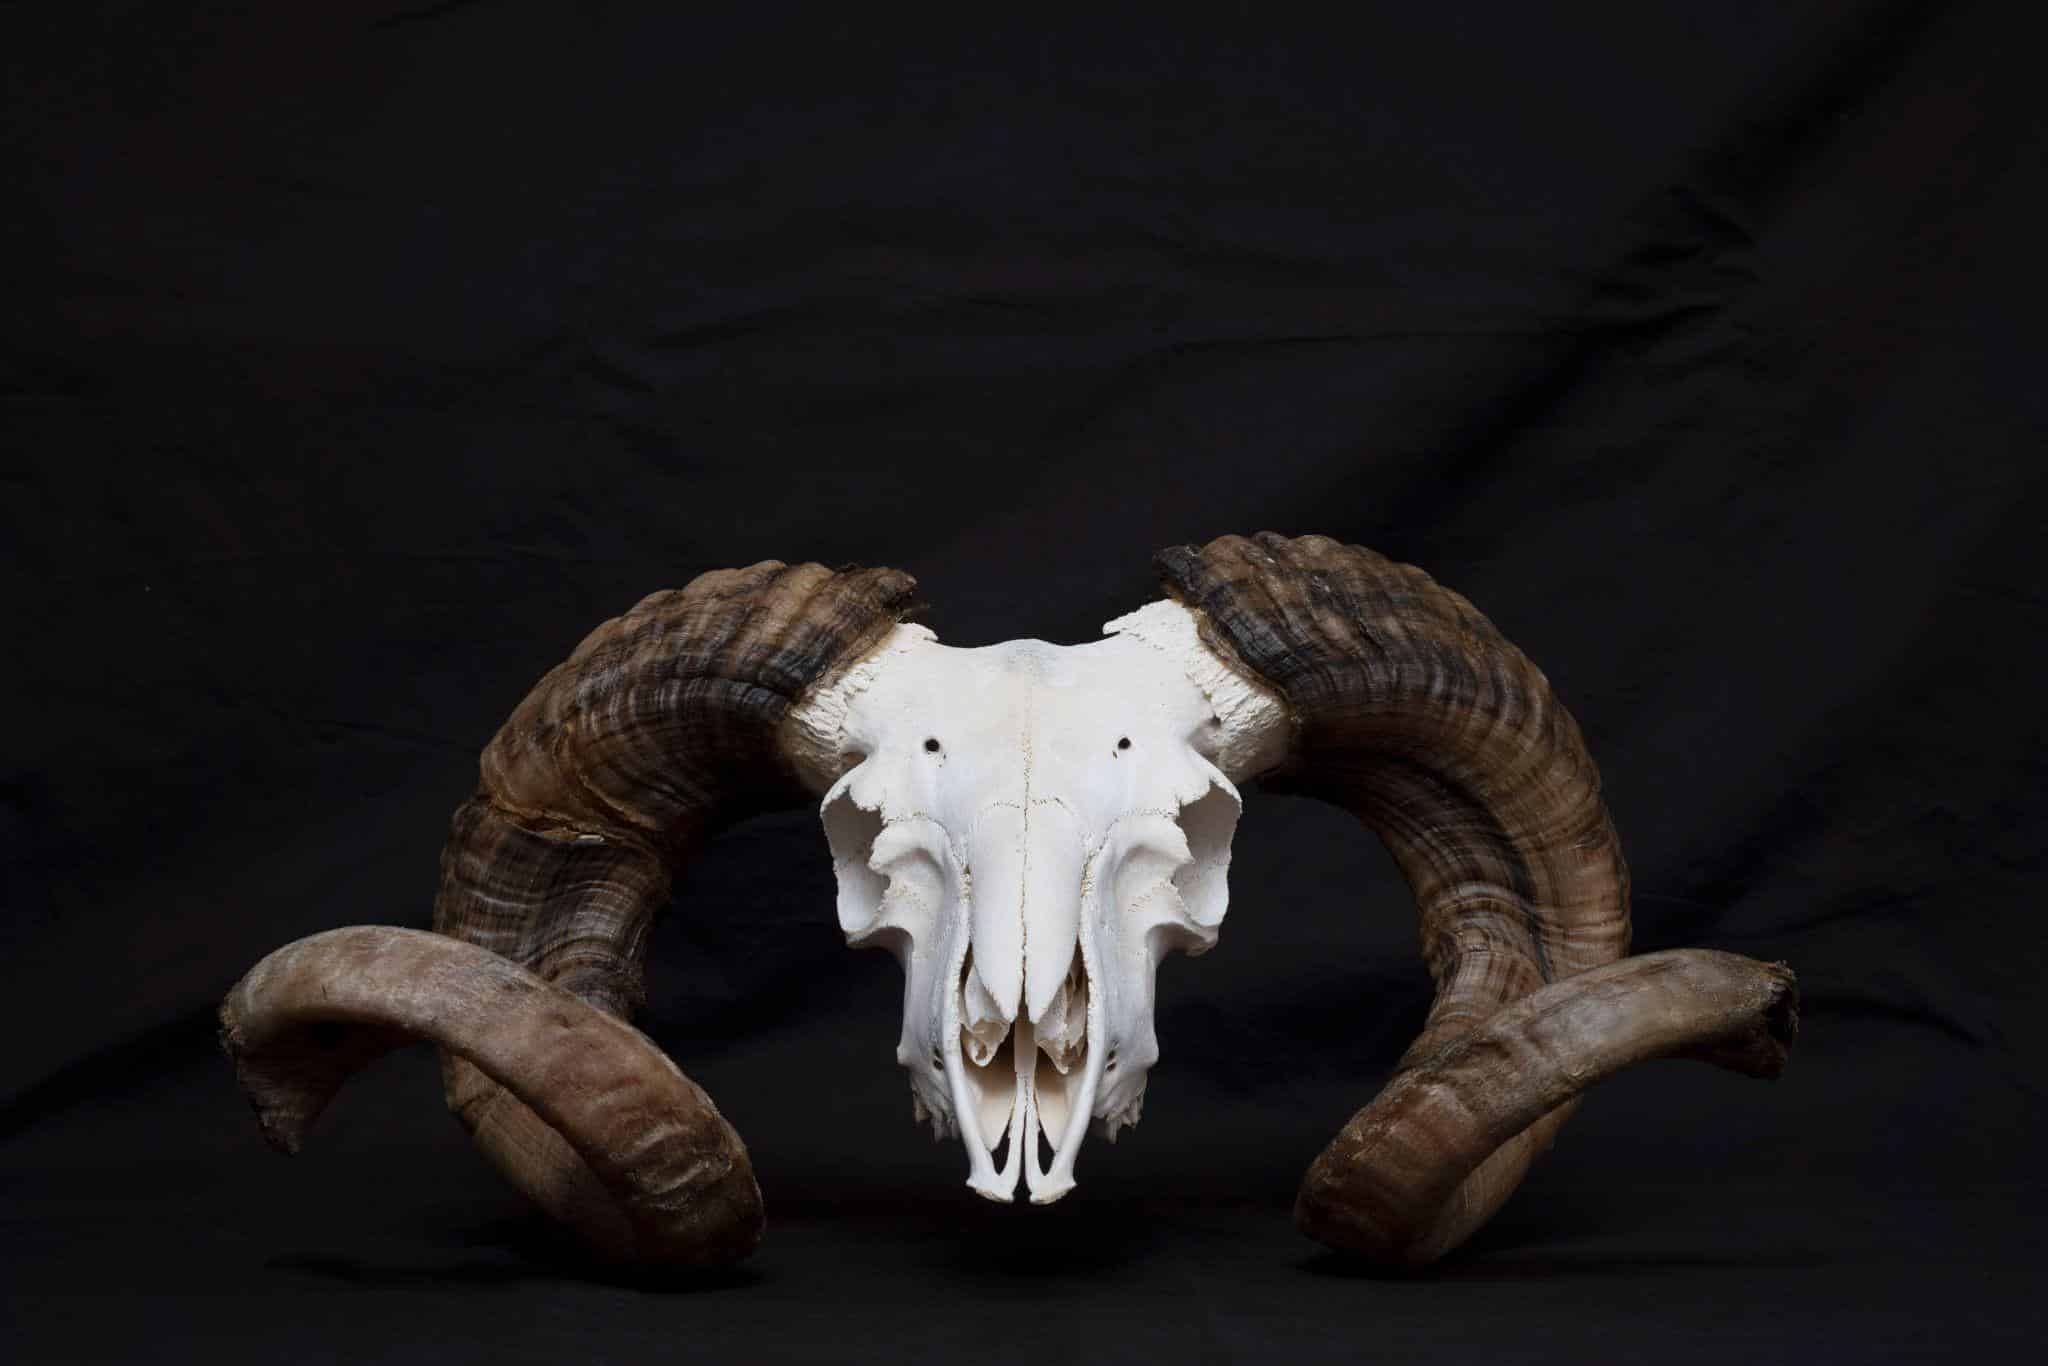 Goat skull with horns